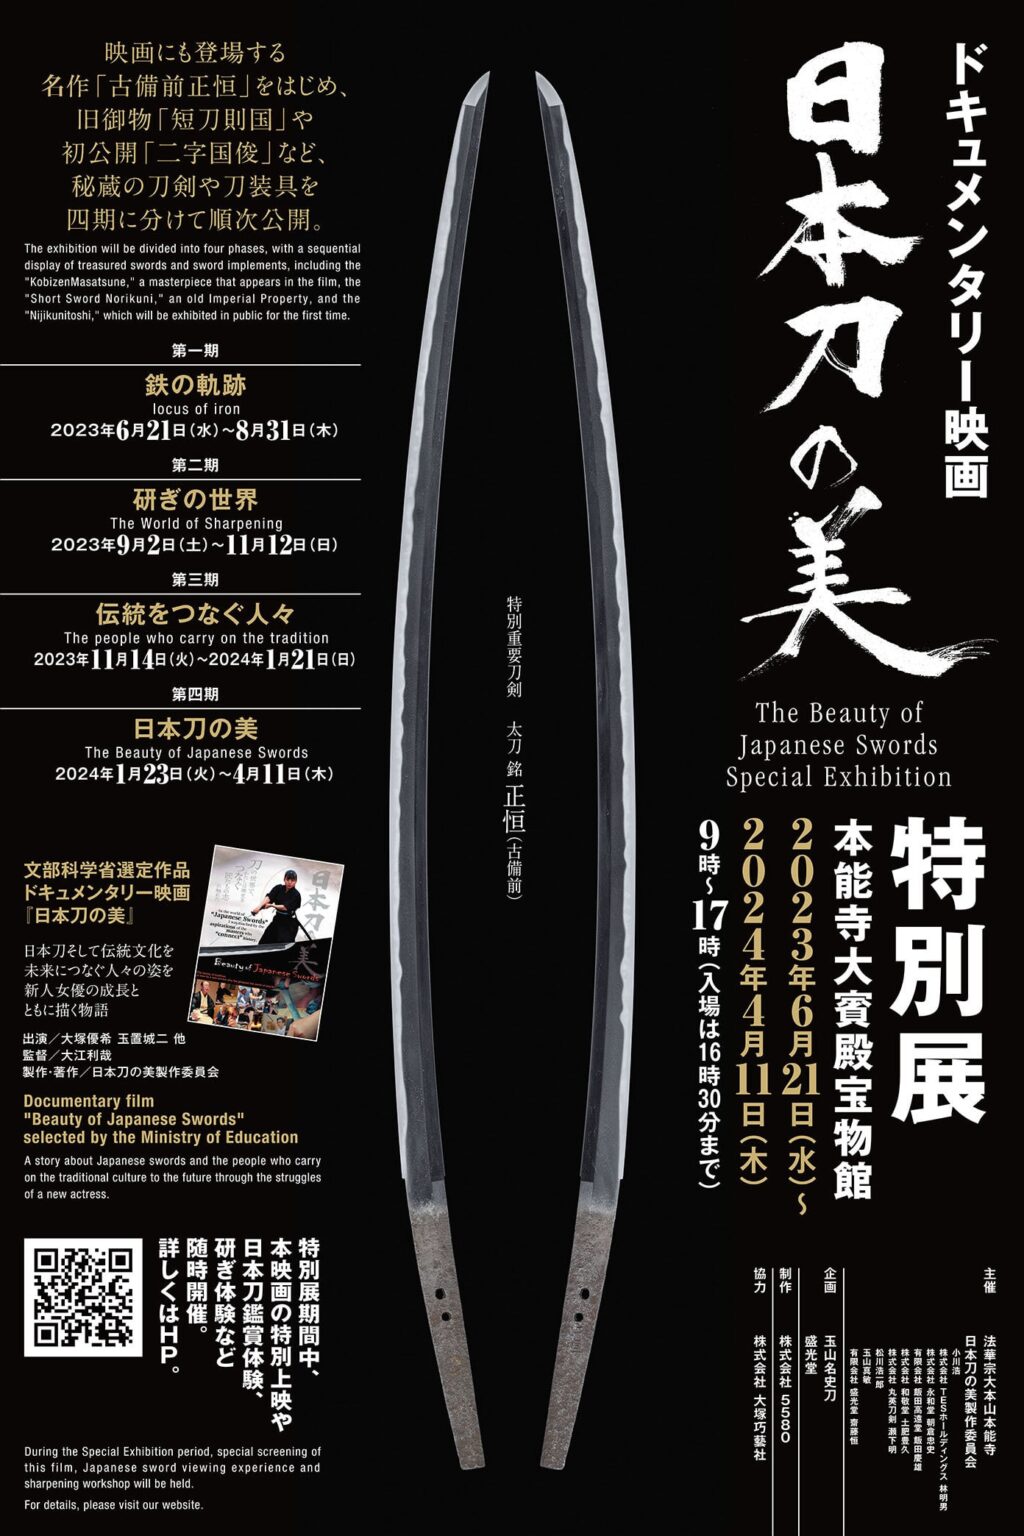 京都 本能寺 大宝殿宝物館にて、ドキュメンタリー映画「日本刀の美」の<br /> 特別展を開催しております。名刀の展示や映画の上映など、４期にわたり<br /> イベントをおこなってますので、ぜひ足をお運びください。